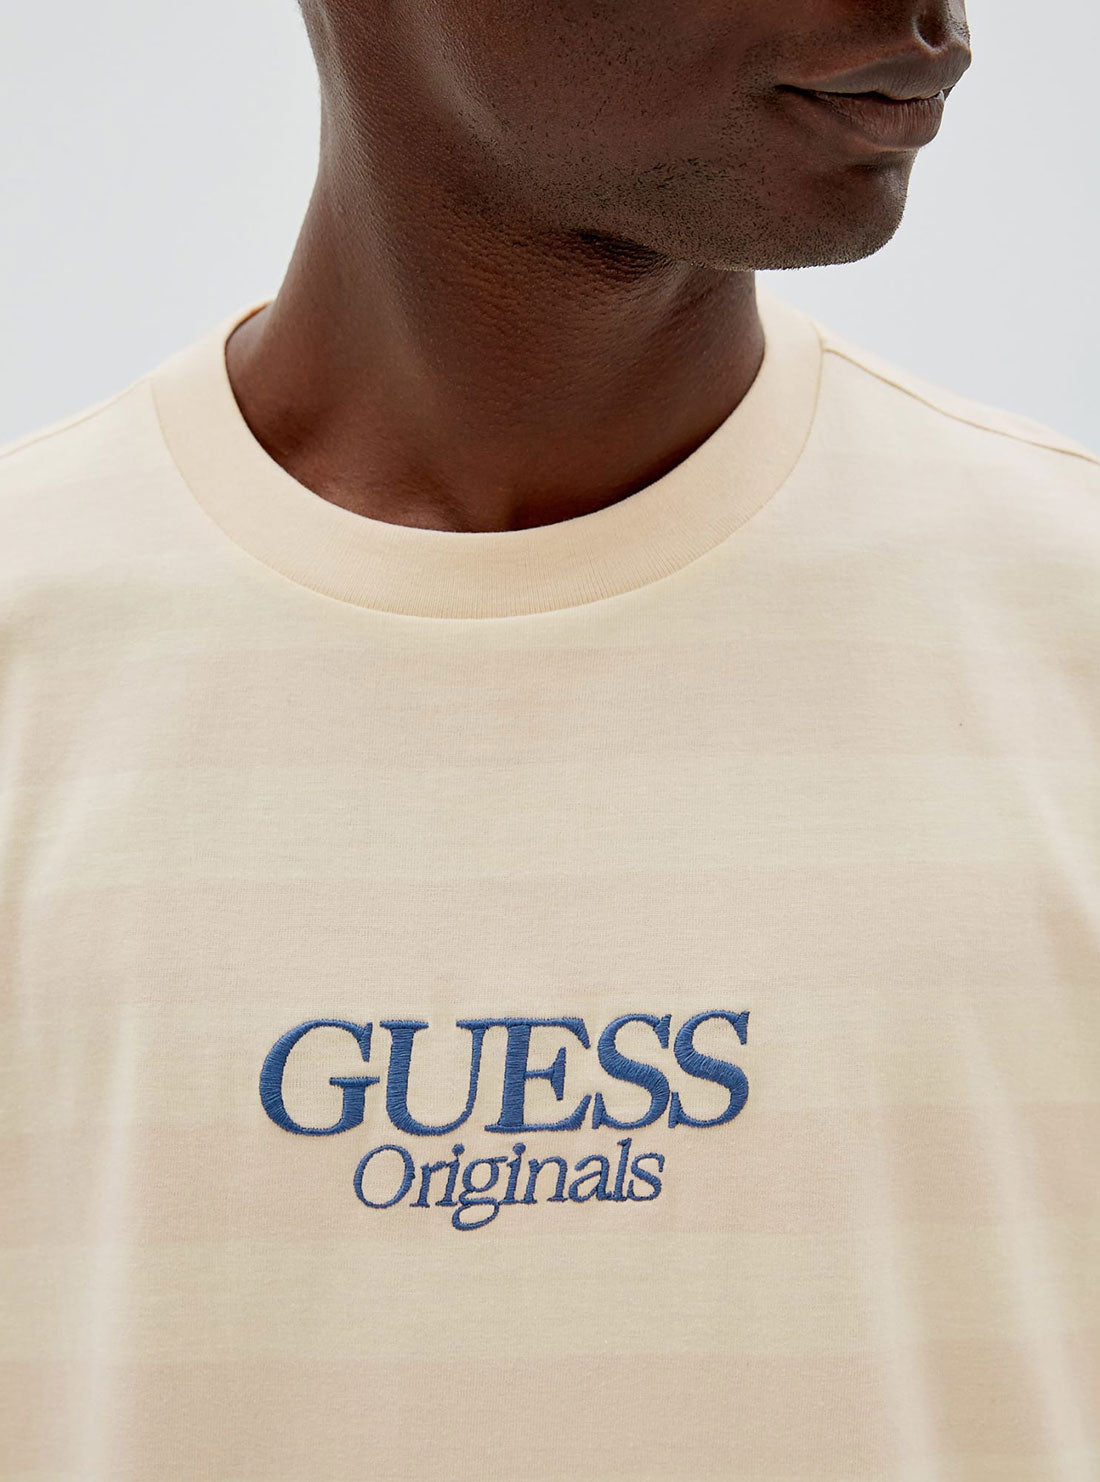 GUESS Originals Yellow Reid Striped T-Shirt